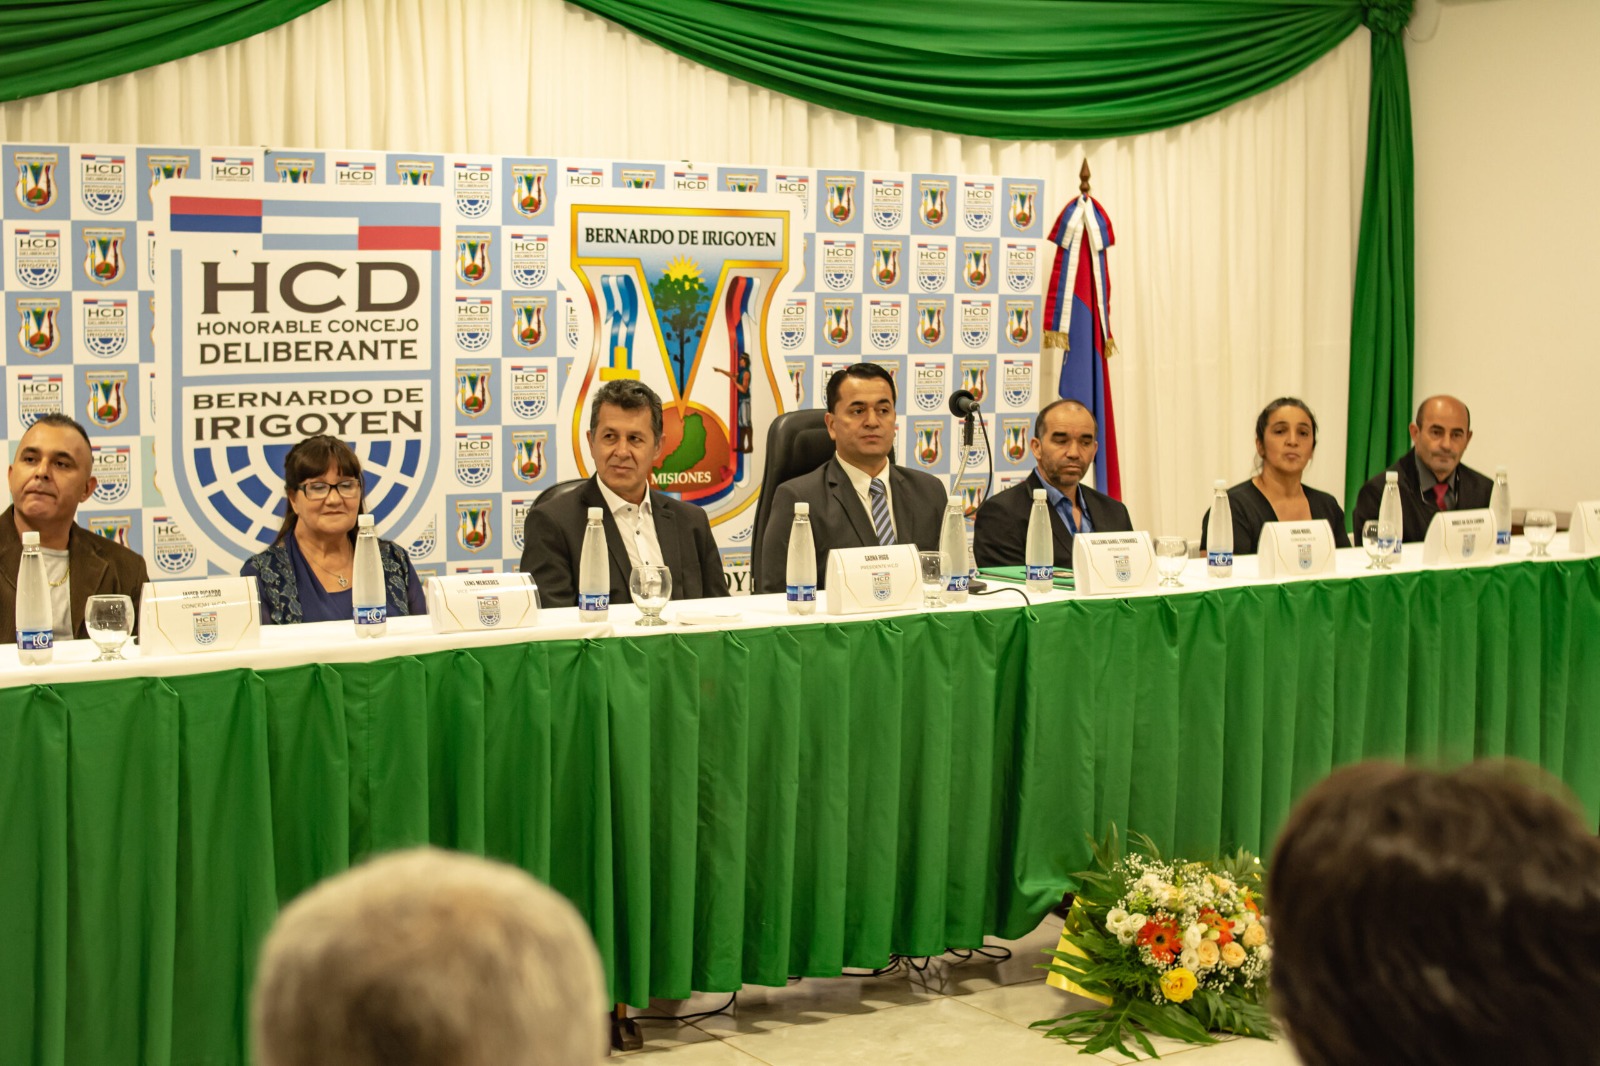 Con el anuncio de más obras para Irigoyen, el intendente Fernández abrió un nuevo período de sesiones del Concejo Deliberante local imagen-1